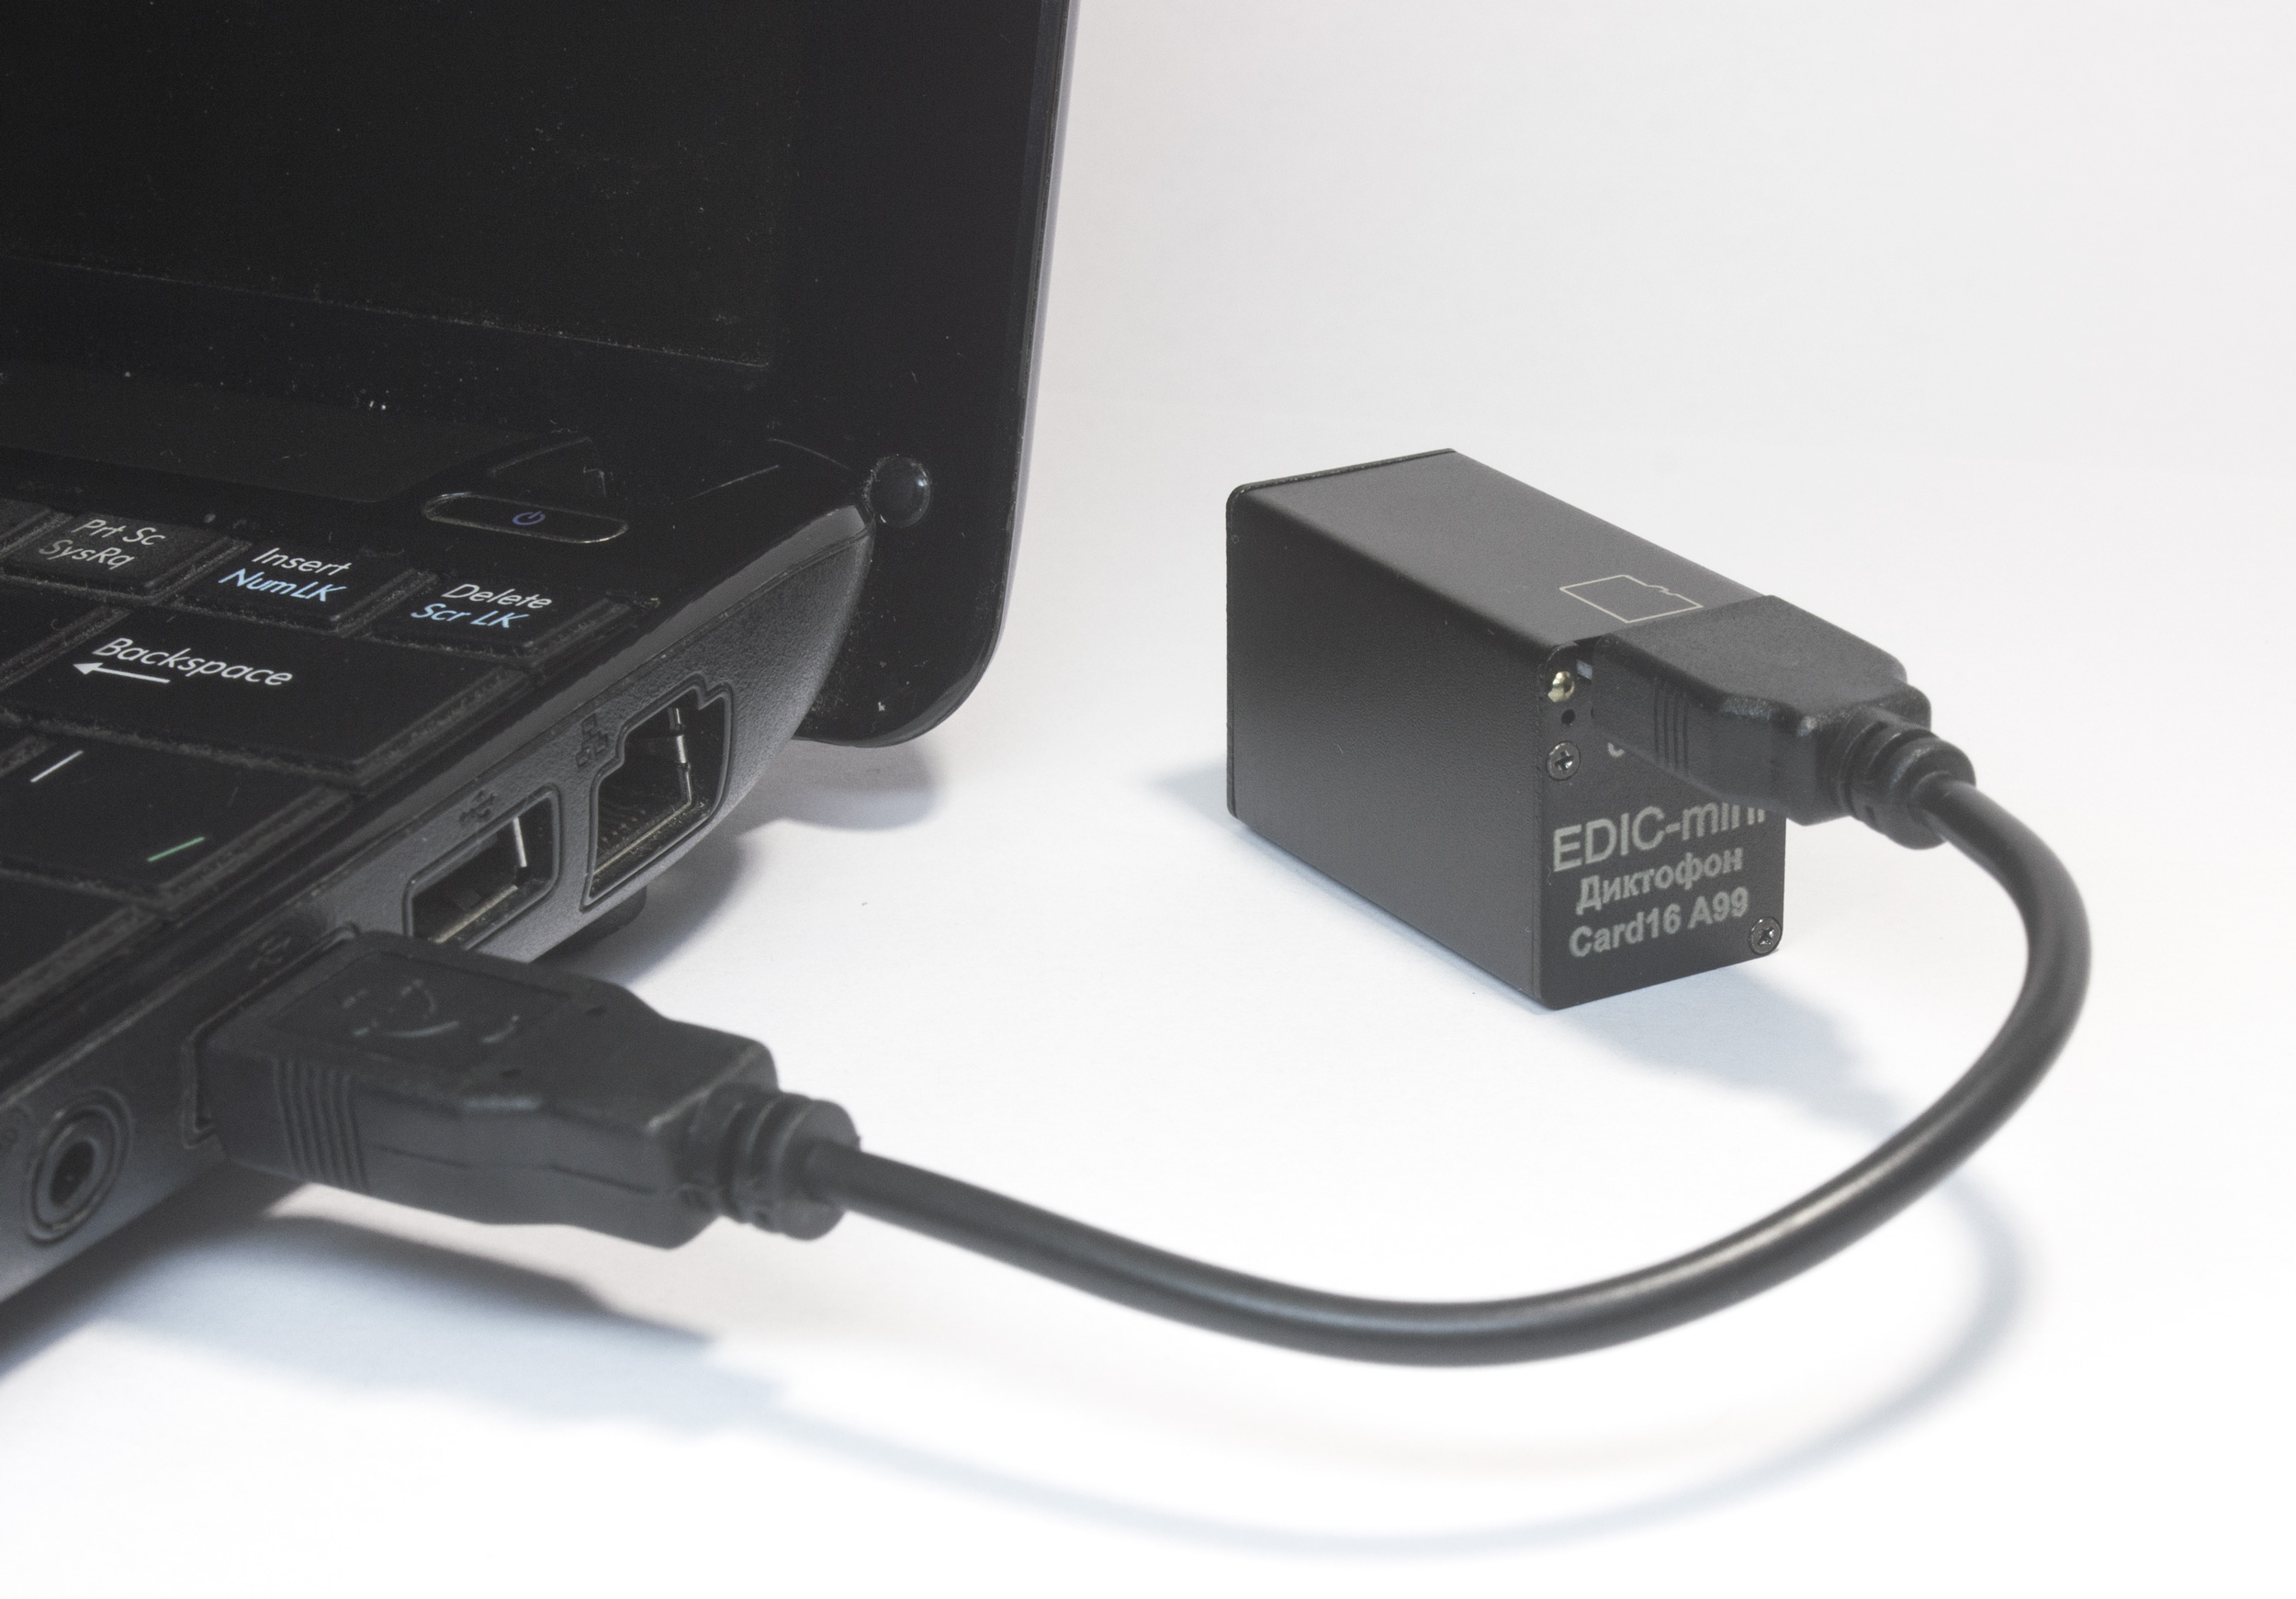 Все Телесистемы ЕМ Card16 А99 (металл, размер 18*23*37мм, вес 26г, автономность до 200ч, аккумулятор) видеонаблюдения в магазине Vidos Group